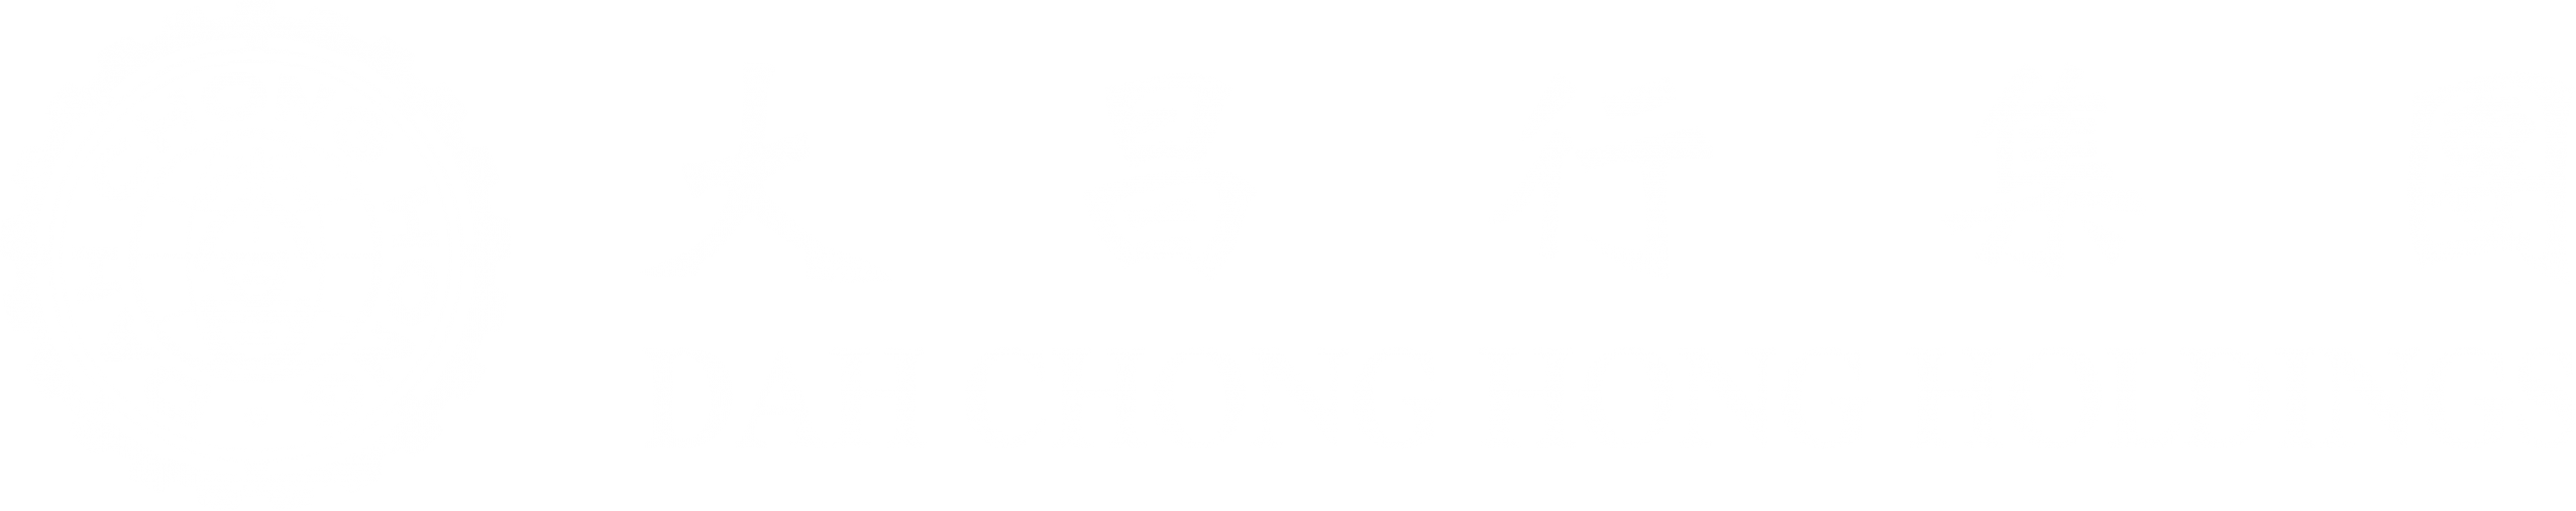 Dah Chong Hong Holdings